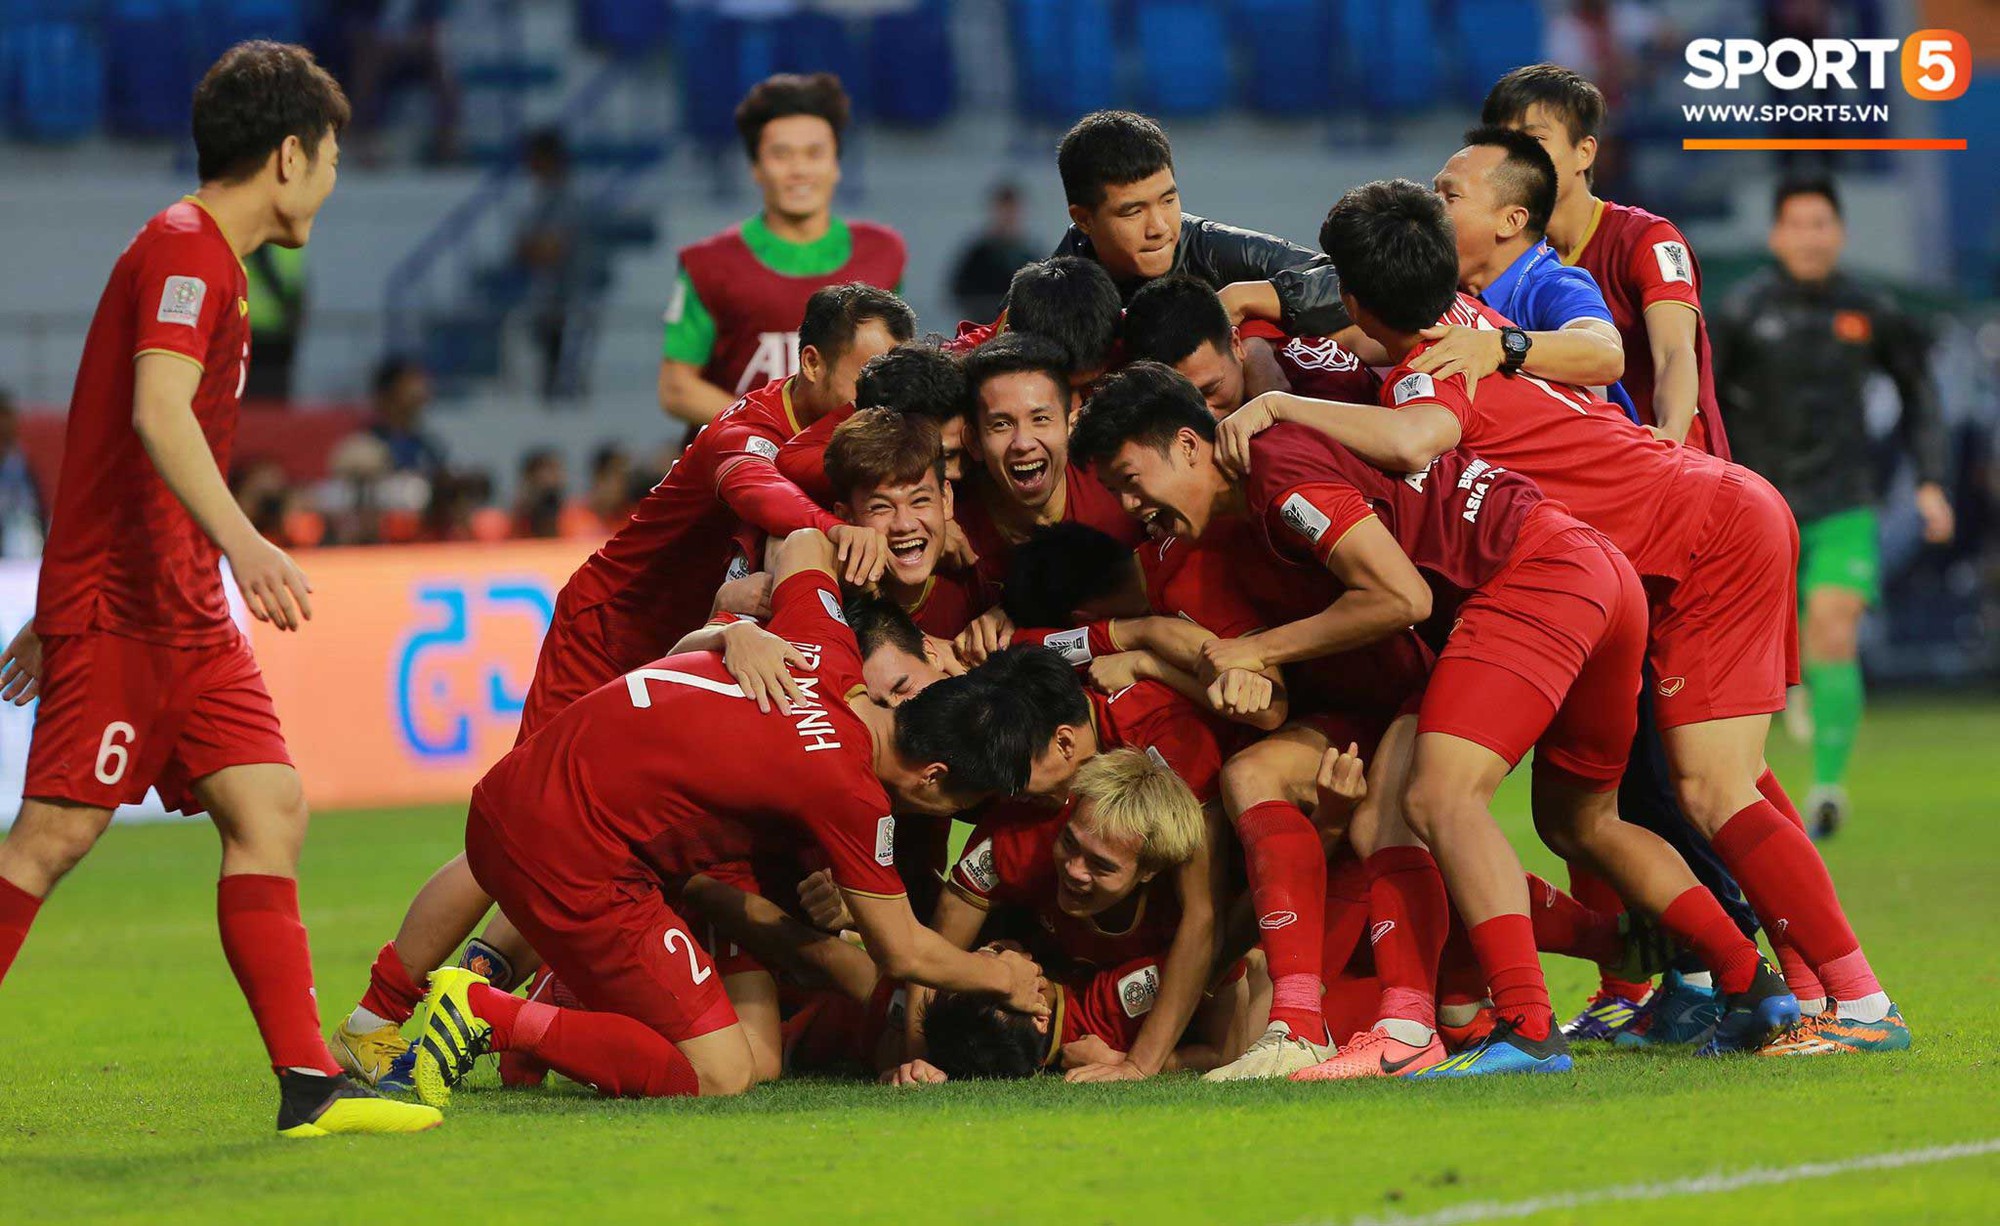 Bùi Tiến Dũng - thủ môn trẻ tài năng của bóng đá Việt Nam đã cho chúng ta thấy sự phát triển và tiến bộ của bóng đá Việt Nam. Hình ảnh về Bùi Tiến Dũng sẽ mang đến cho bạn sự khám phá những tài năng bóng đá tại Việt Nam.